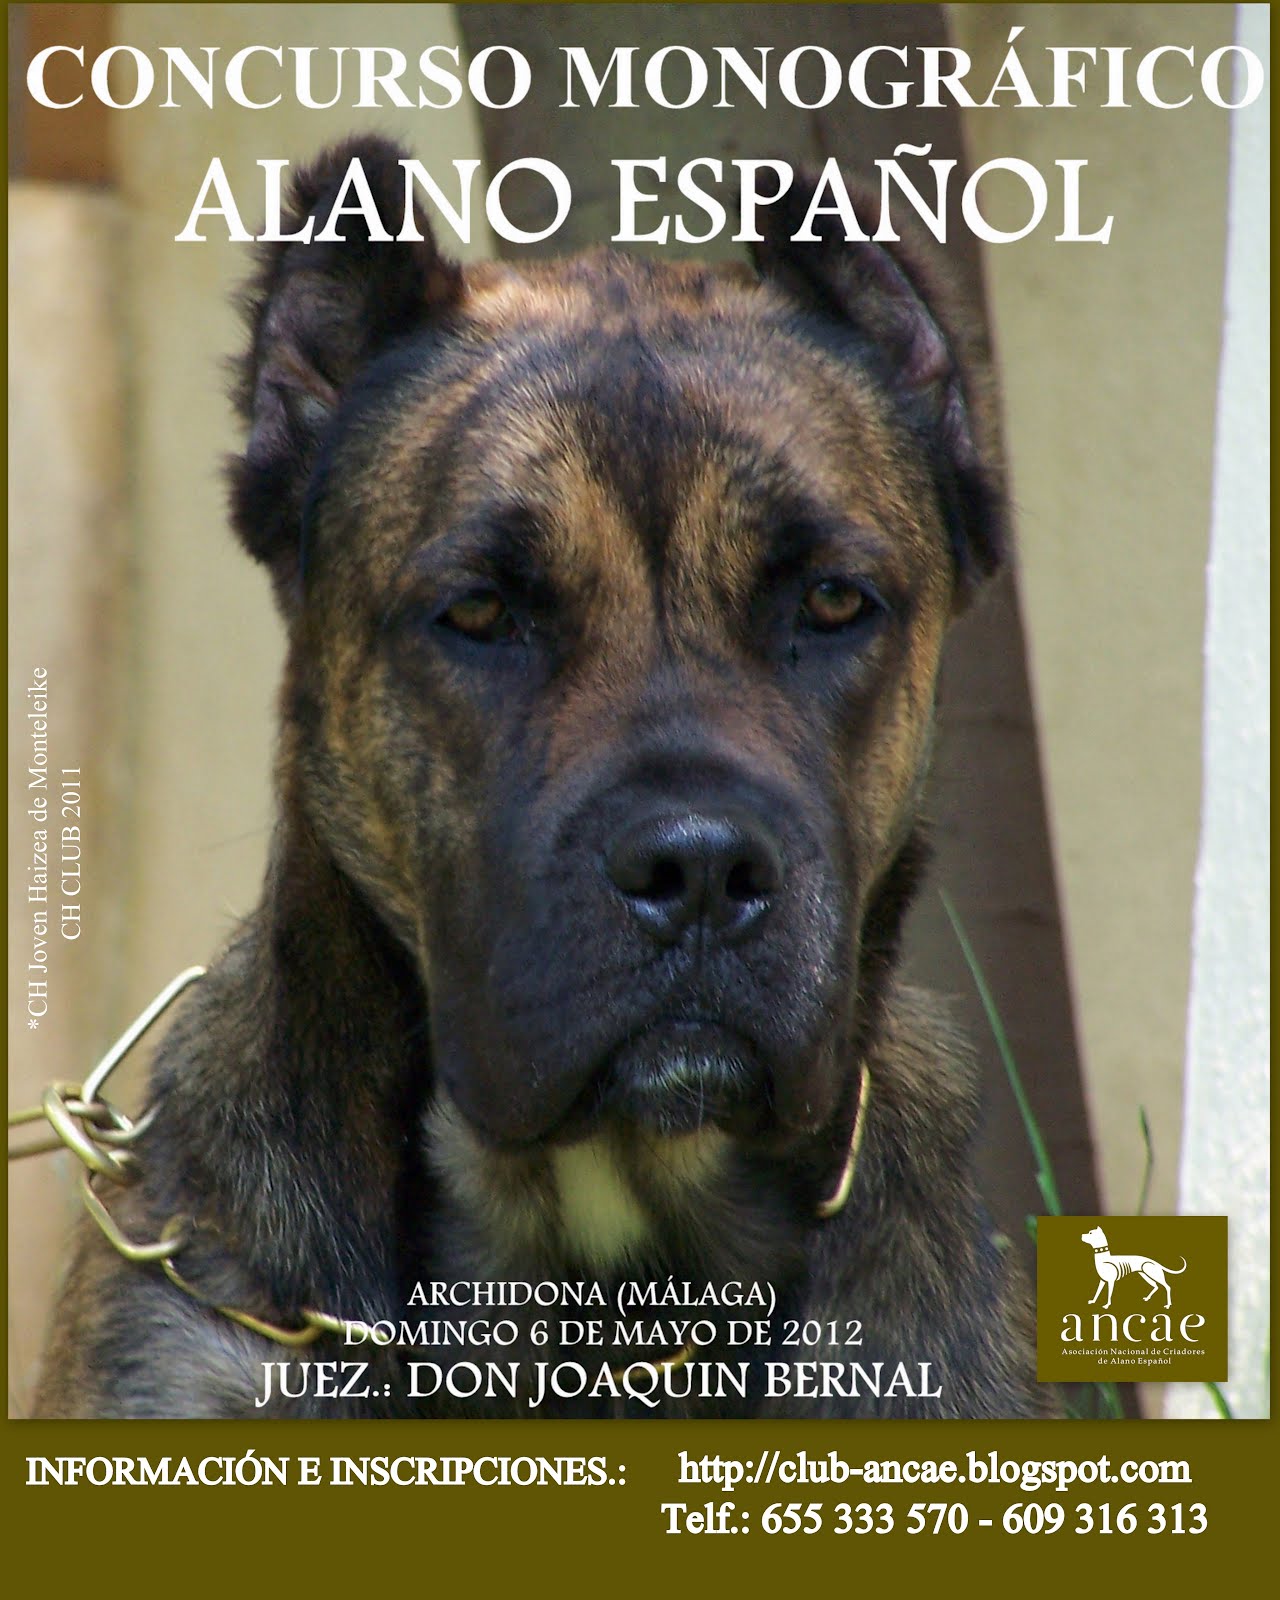 El Alano Español Un Perro de Historia y Nobleza